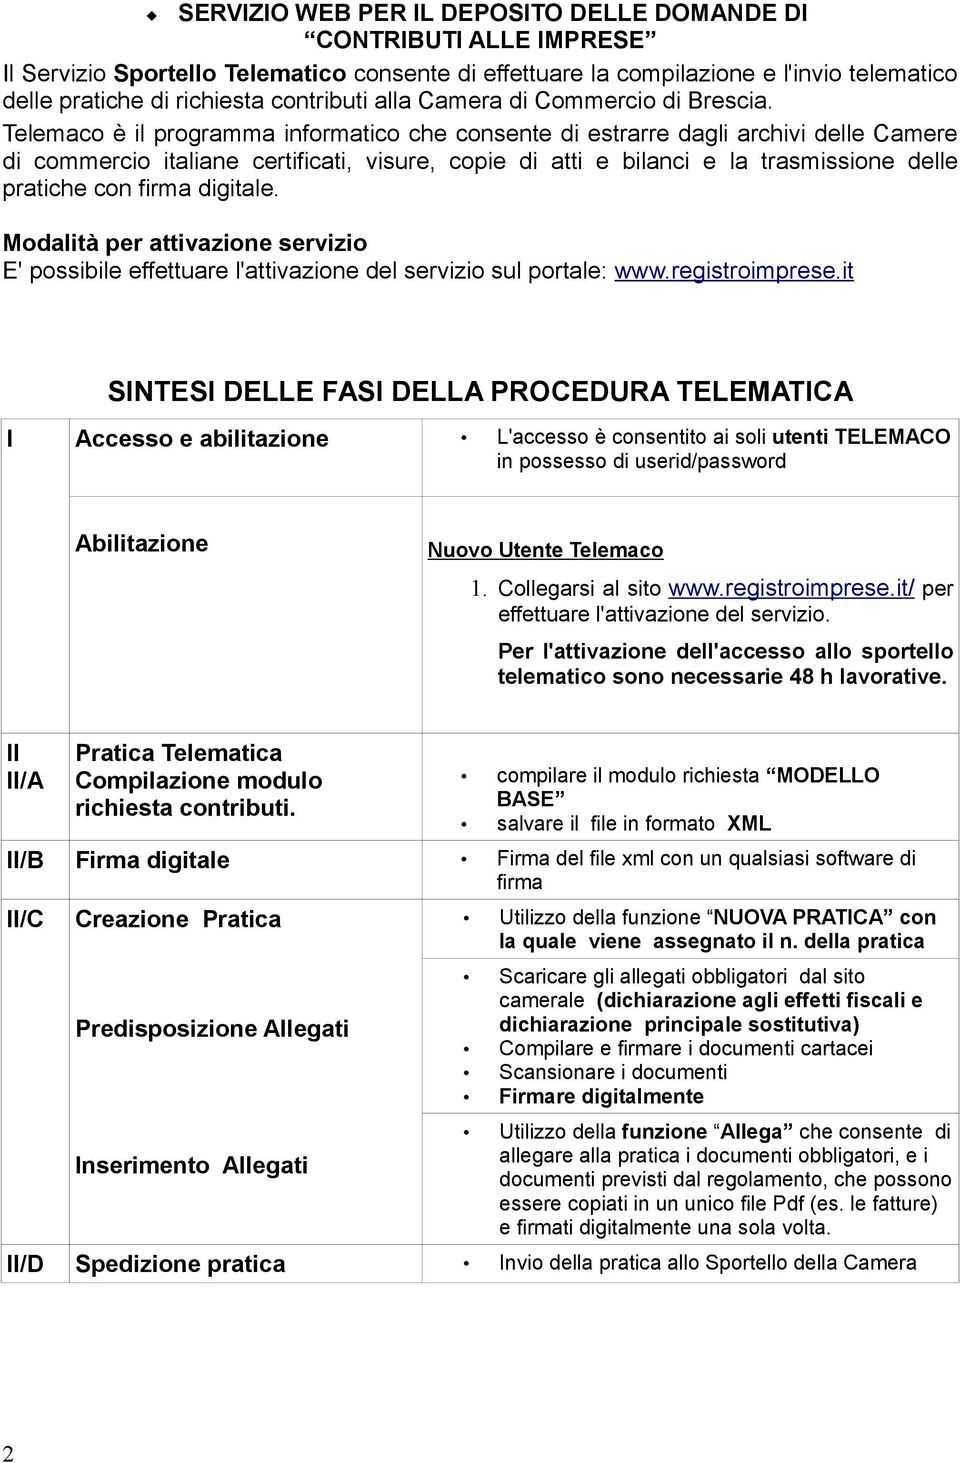 Telemaco è il programma informatico che consente di estrarre dagli archivi delle Camere di commercio italiane certificati, visure, copie di atti e bilanci e la trasmissione delle pratiche con firma